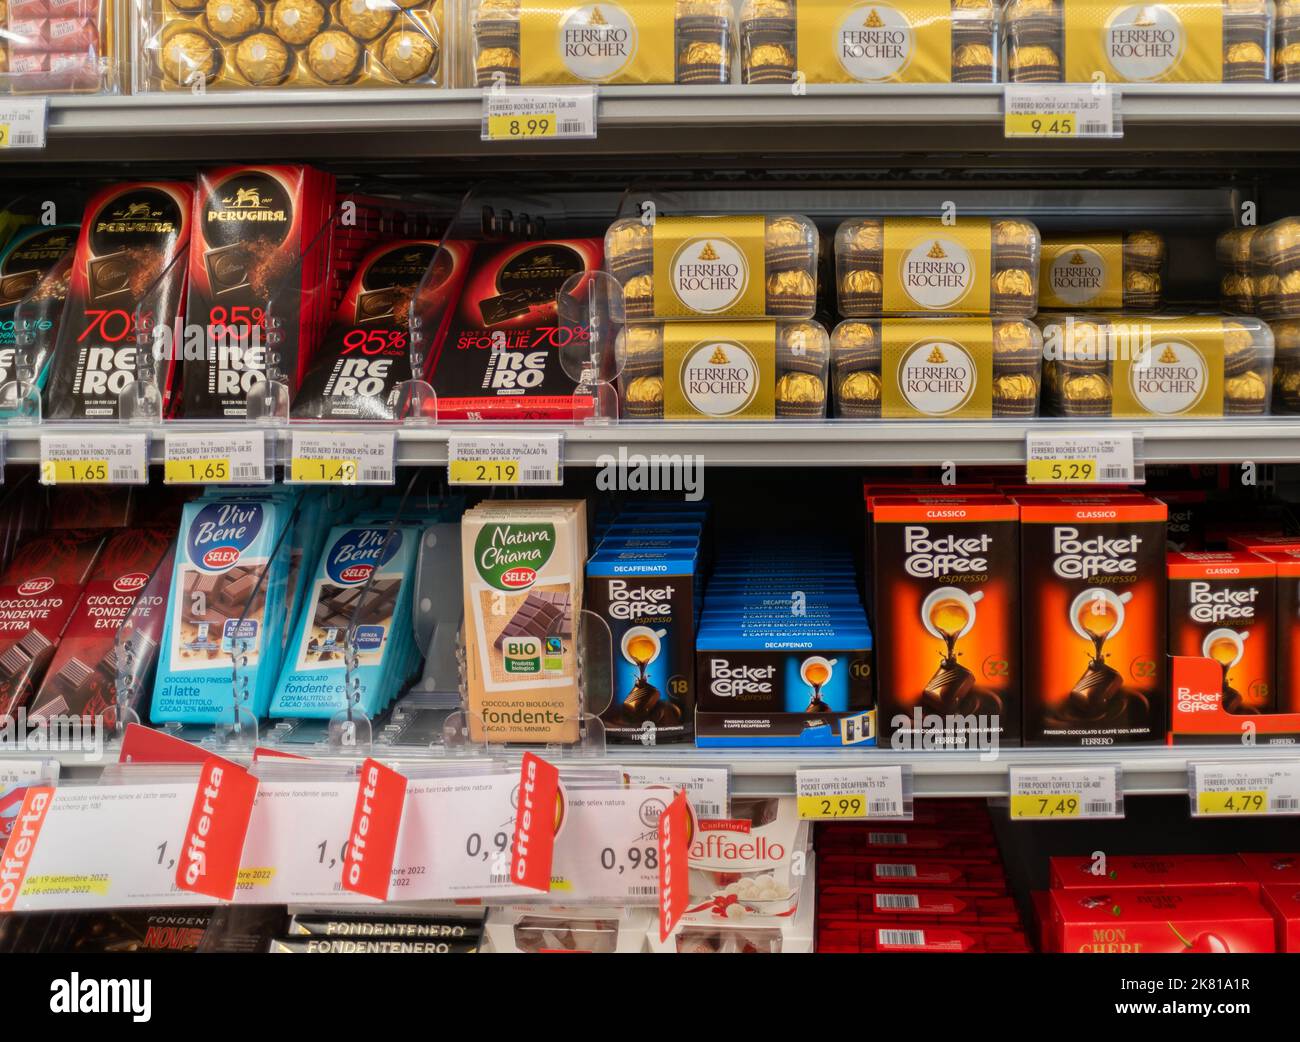 Fossano, Italia - 14 ottobre 2022: Confezioni di Ferrero Rocher, caffè tascabile e barrette di cioccolato Perugina sullo scaffale del supermercato italiano Foto Stock